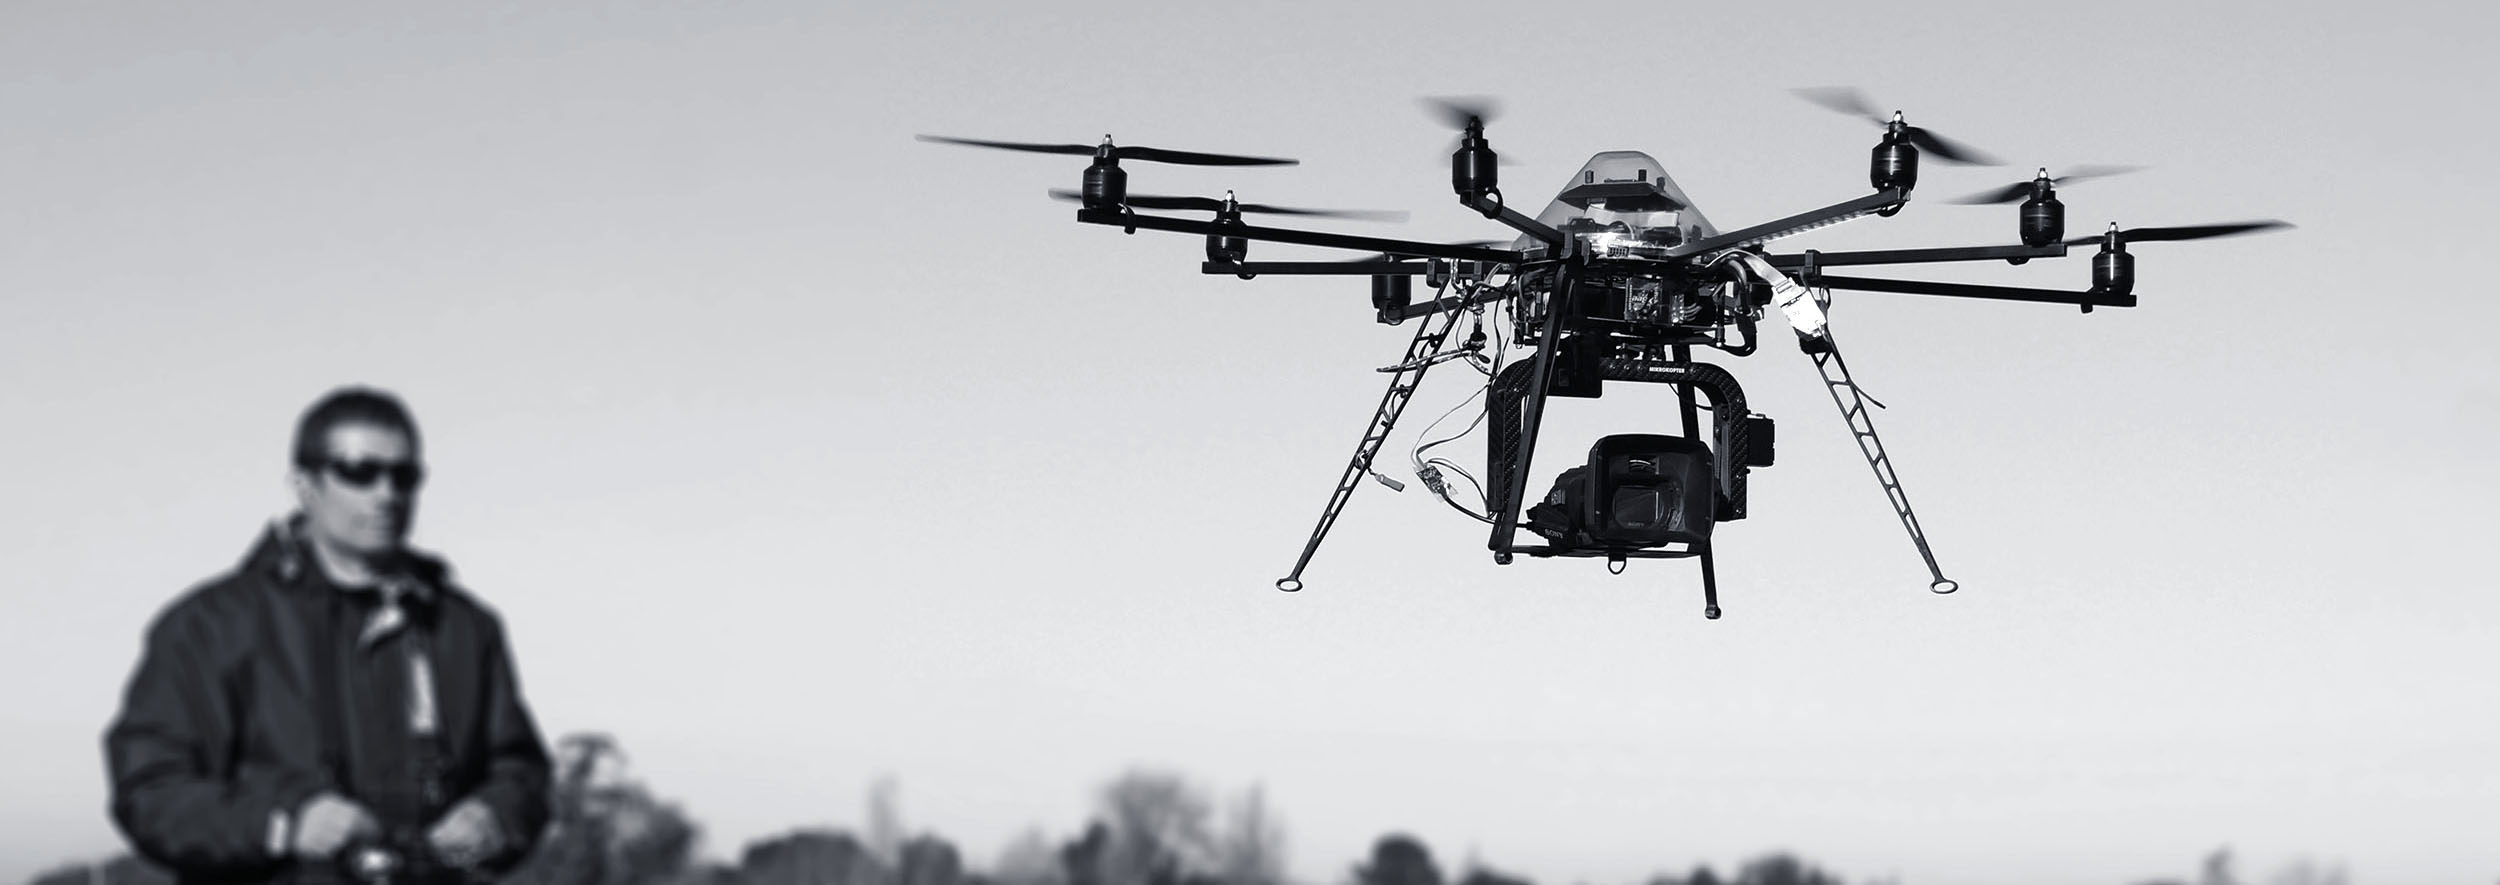 Cette photo represente Mathieu Chambraud en train de piloter un drone professionnel